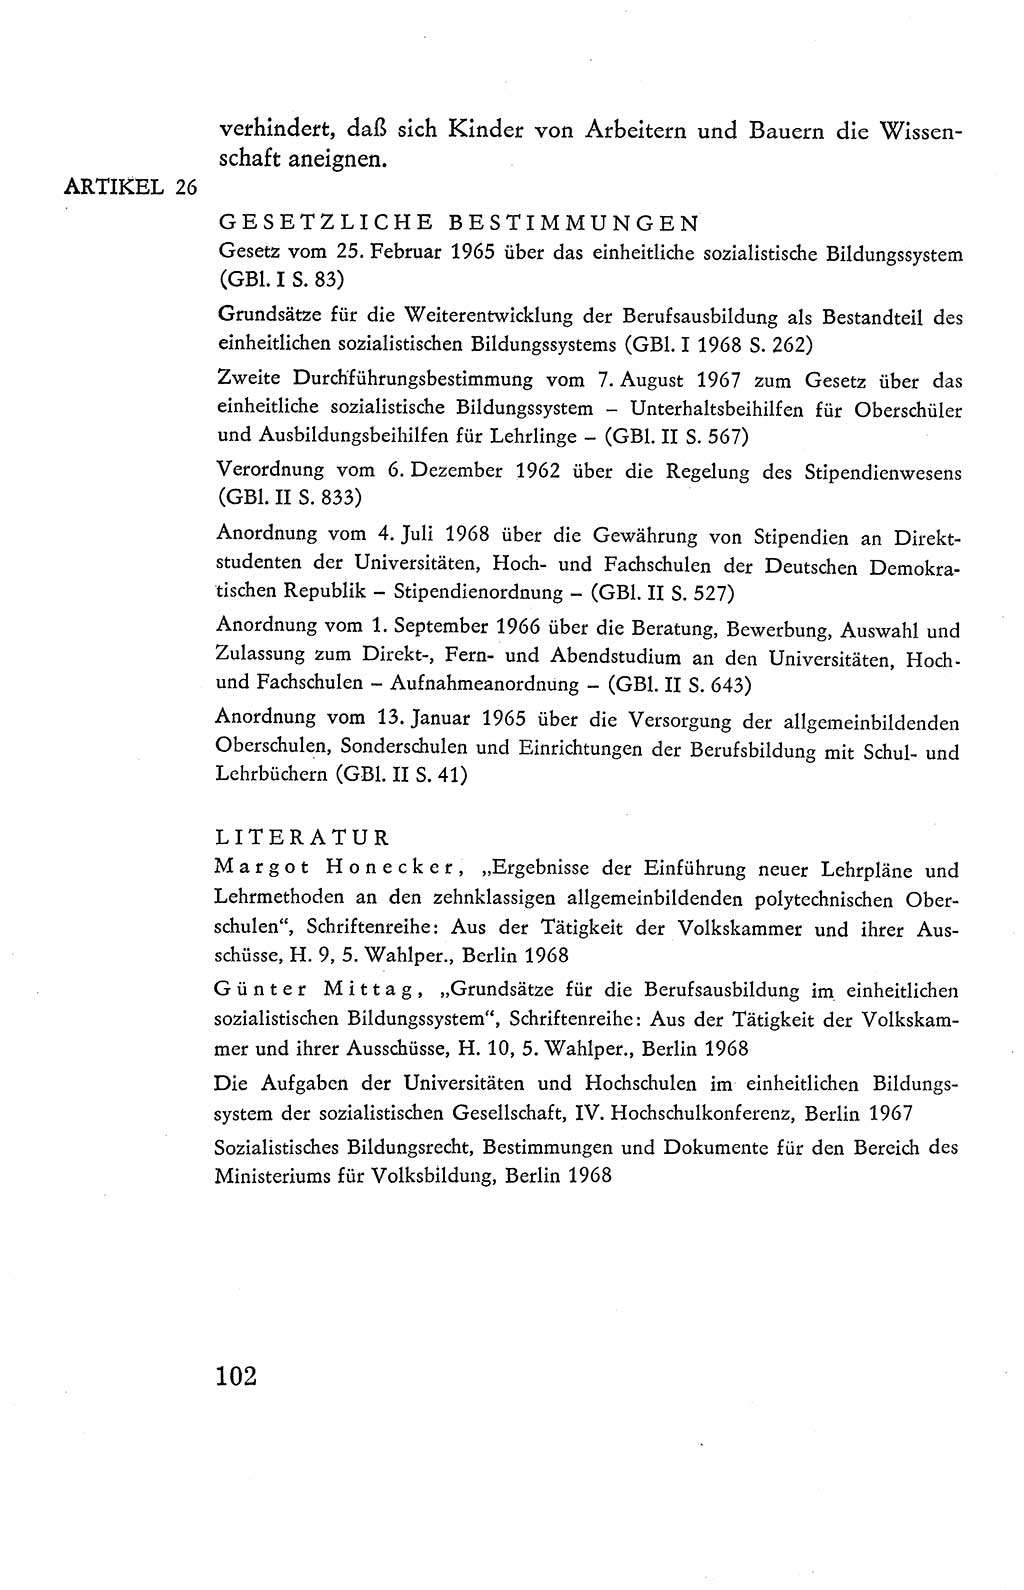 Verfassung der Deutschen Demokratischen Republik (DDR), Dokumente, Kommentar 1969, Band 2, Seite 102 (Verf. DDR Dok. Komm. 1969, Bd. 2, S. 102)